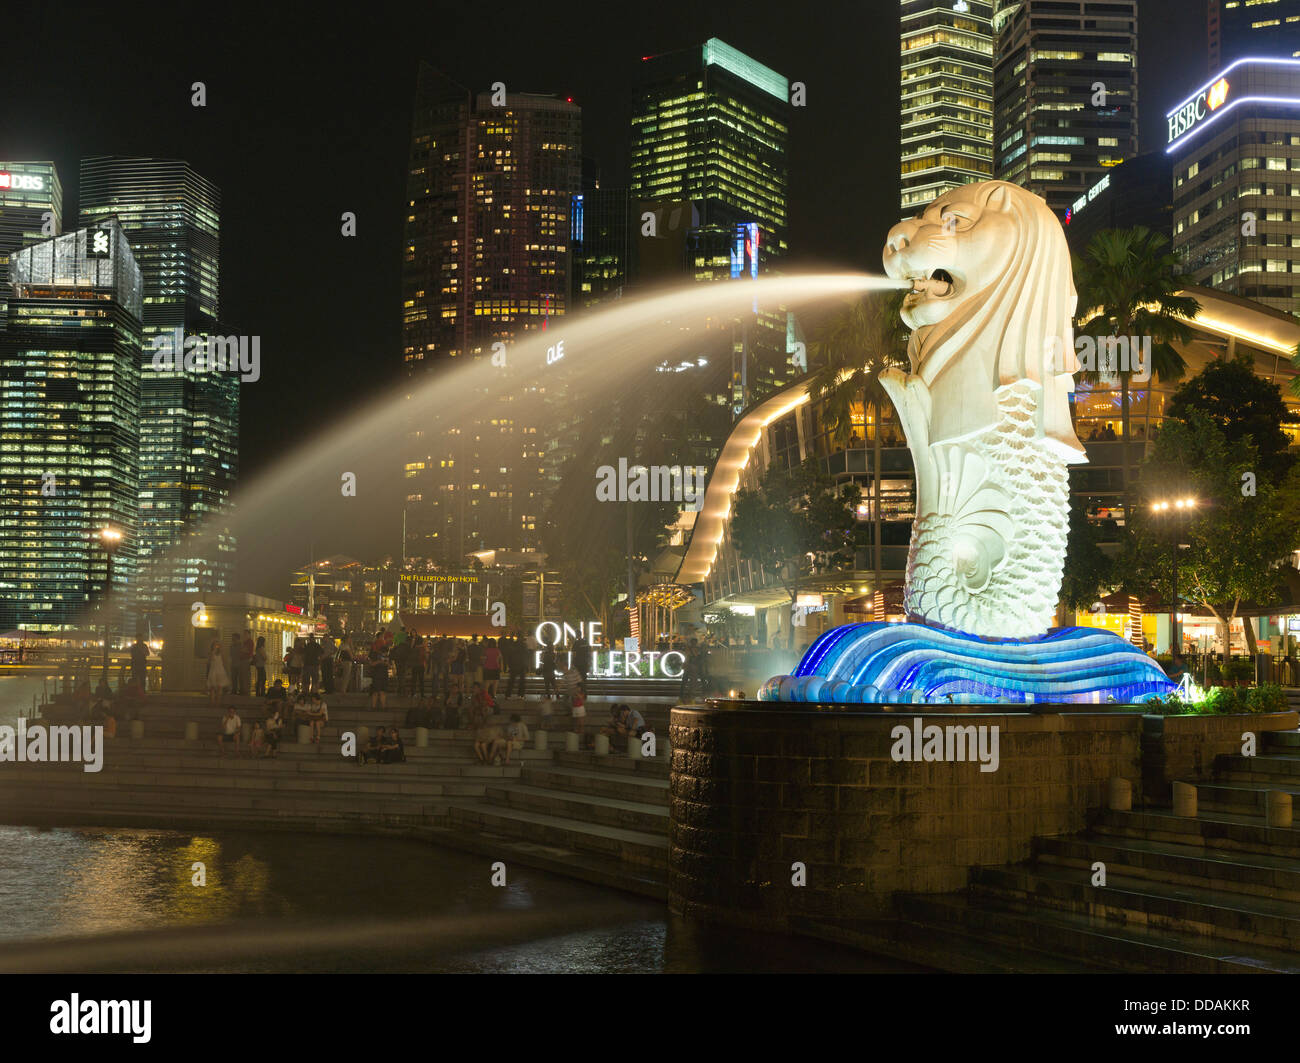 Dh du Parc Merlion Merlion SINGAPOUR MARINA BAY nuit ville lumières statue fontaine skyscappers Banque D'Images